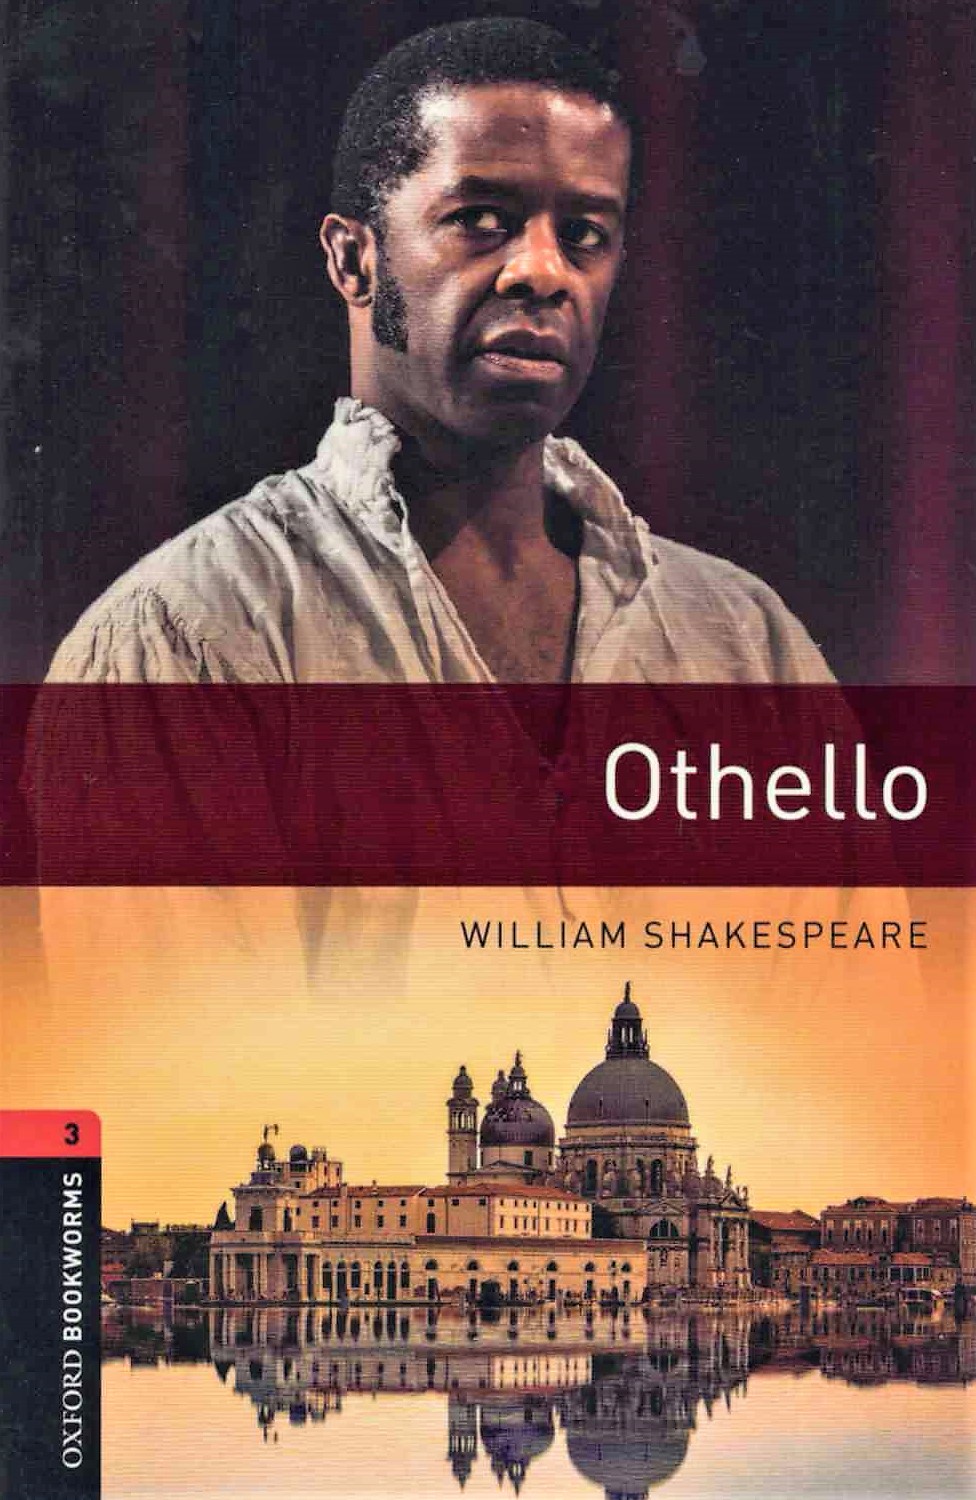 Oxford Bookworms: Othello